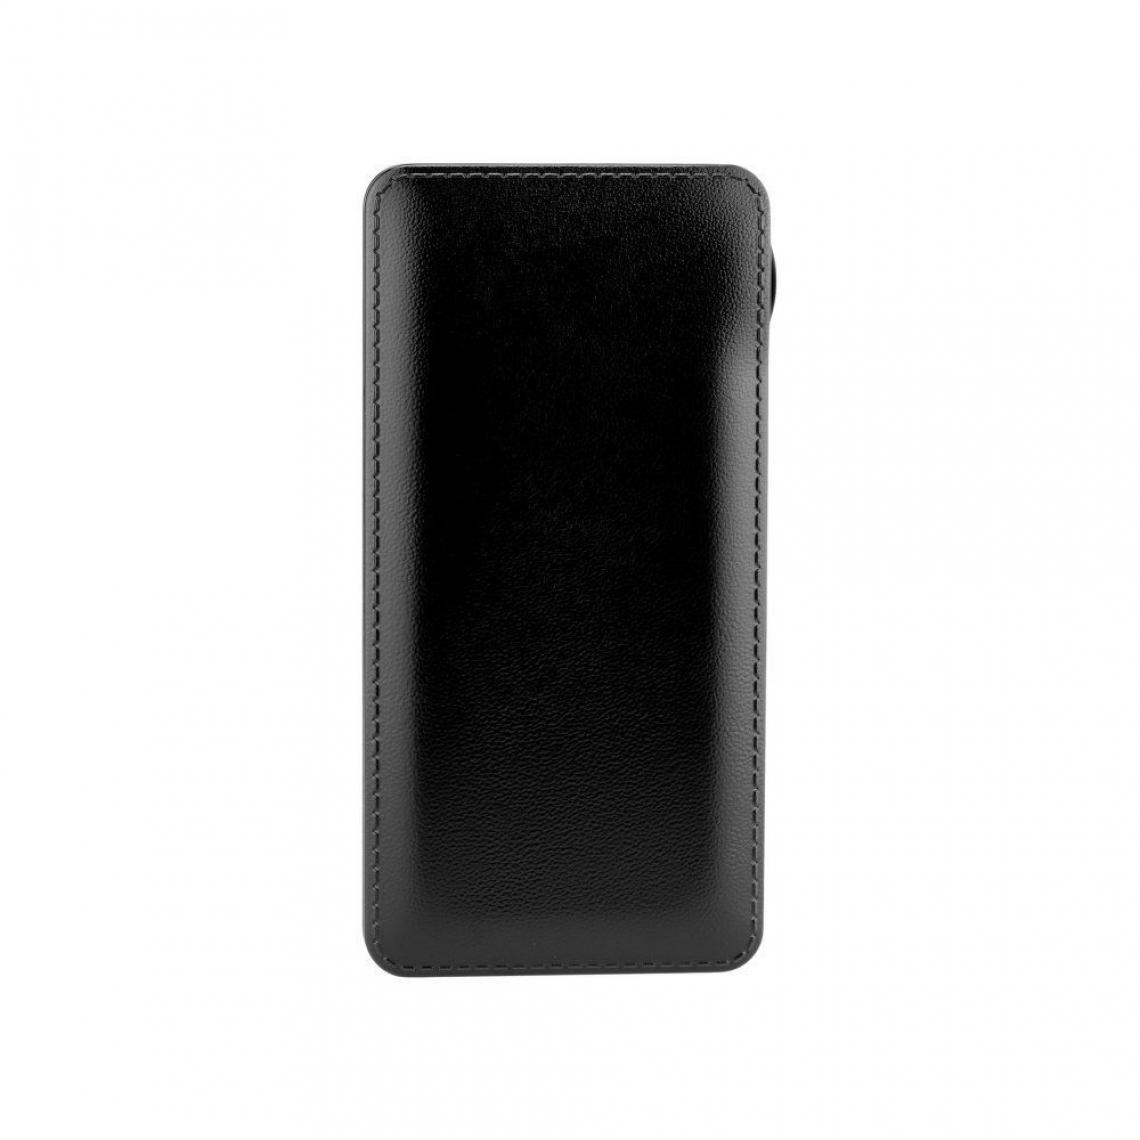 Ozzzo - Chargeur batterie externe 10000mAh powerbank ozzzo noir pour Smartisan Nut R2 - Autres accessoires smartphone